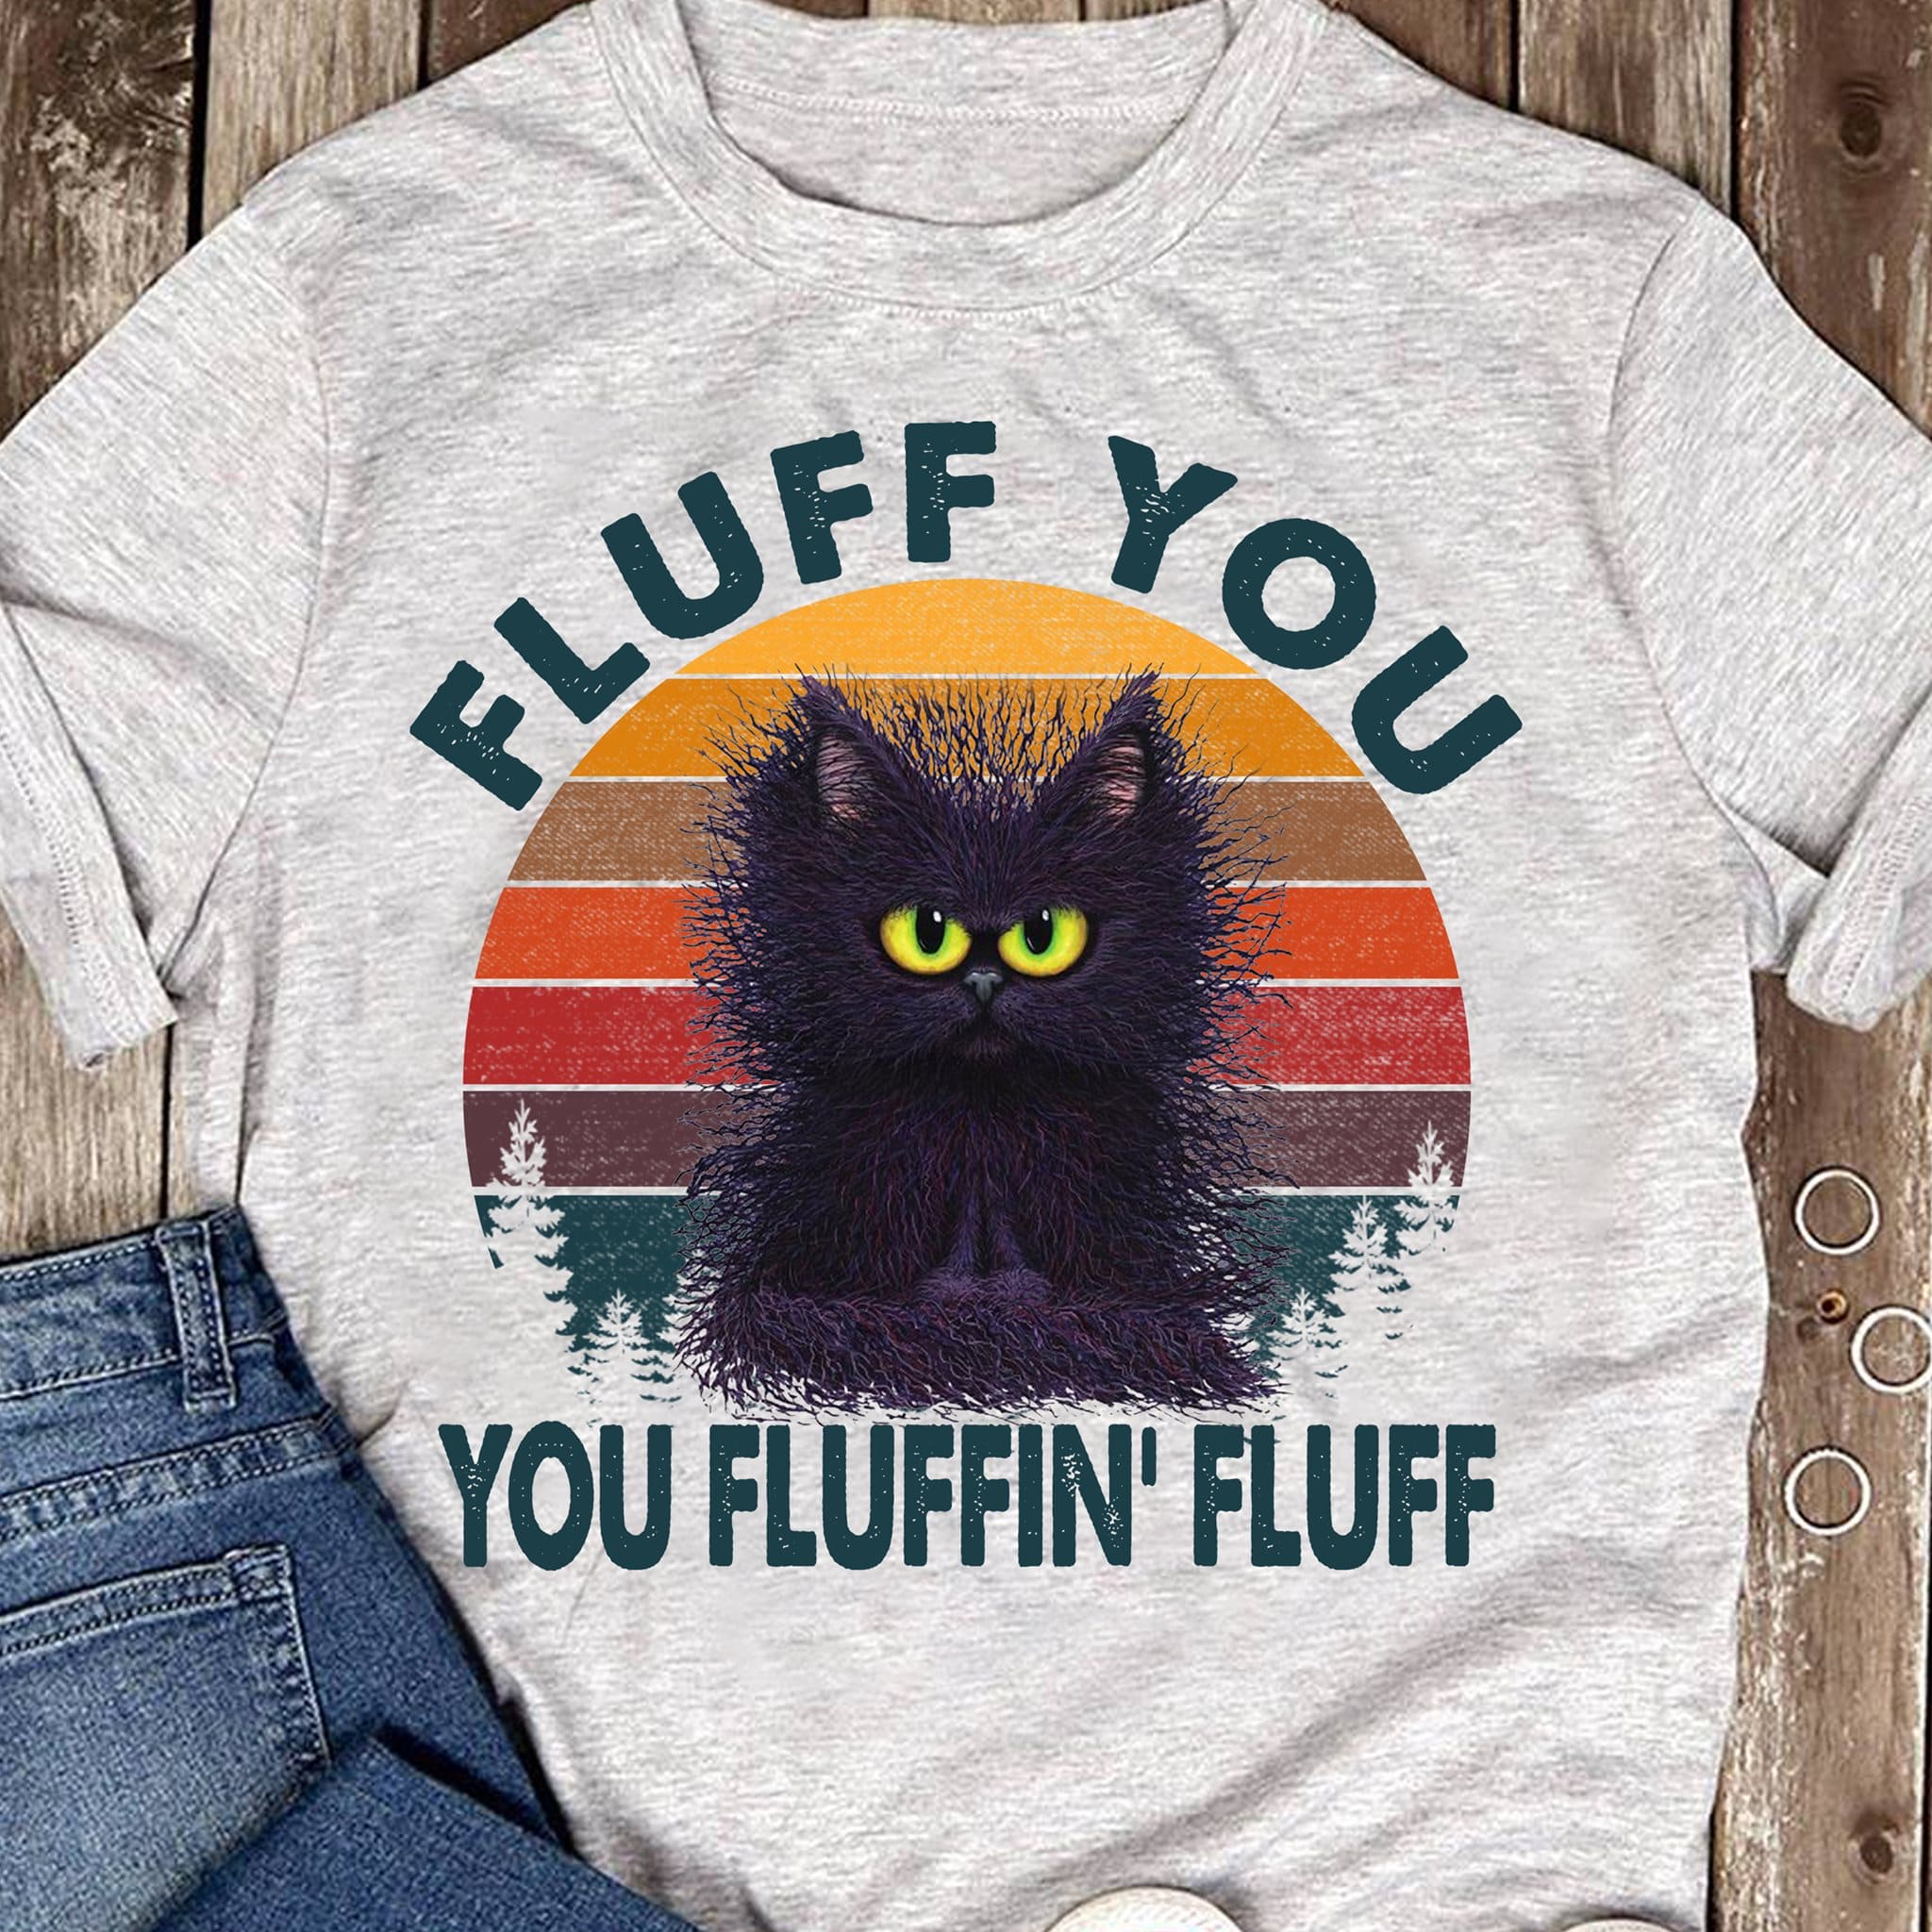 Fluff Cat - Fluff you you fluffin' fluff